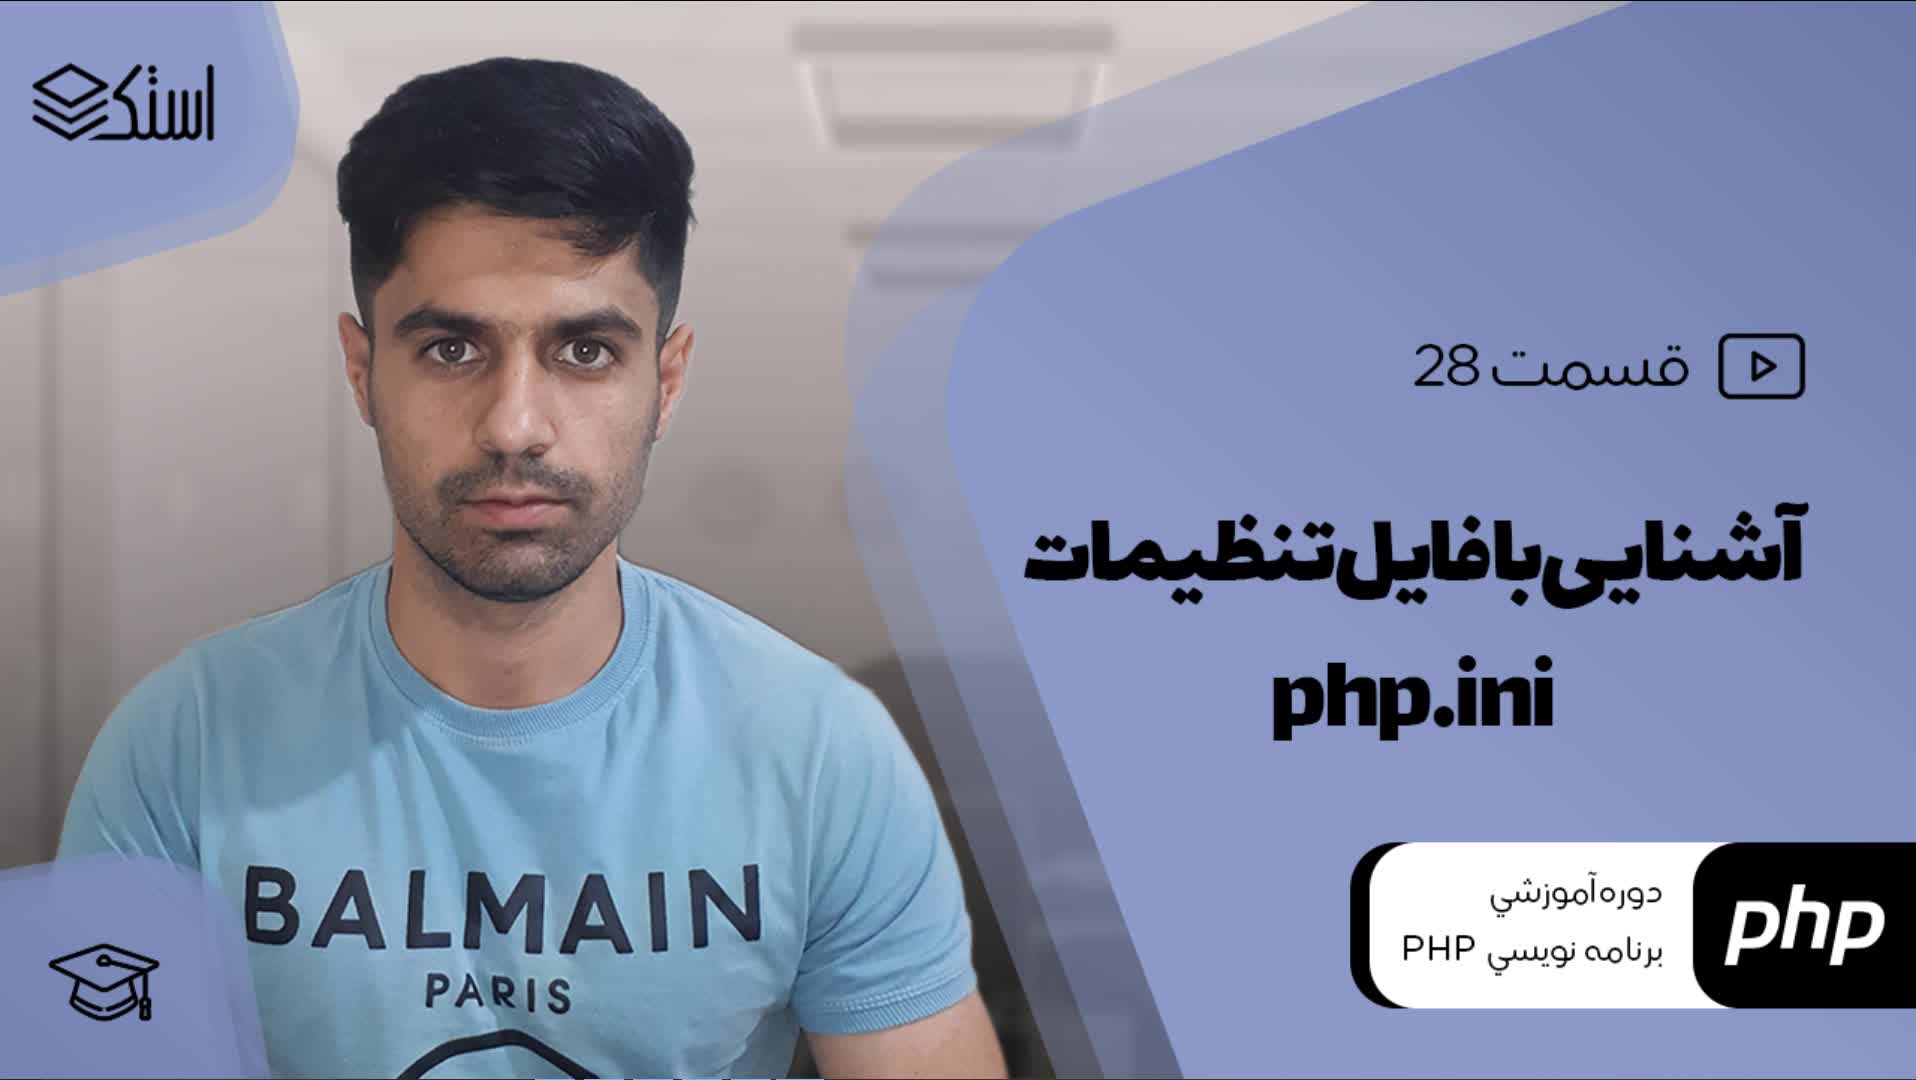 آشنایی با فایل php.ini و اهمیت آن در PHP (ویدیو + توضیحات) - قسمت 28 - استک لرن